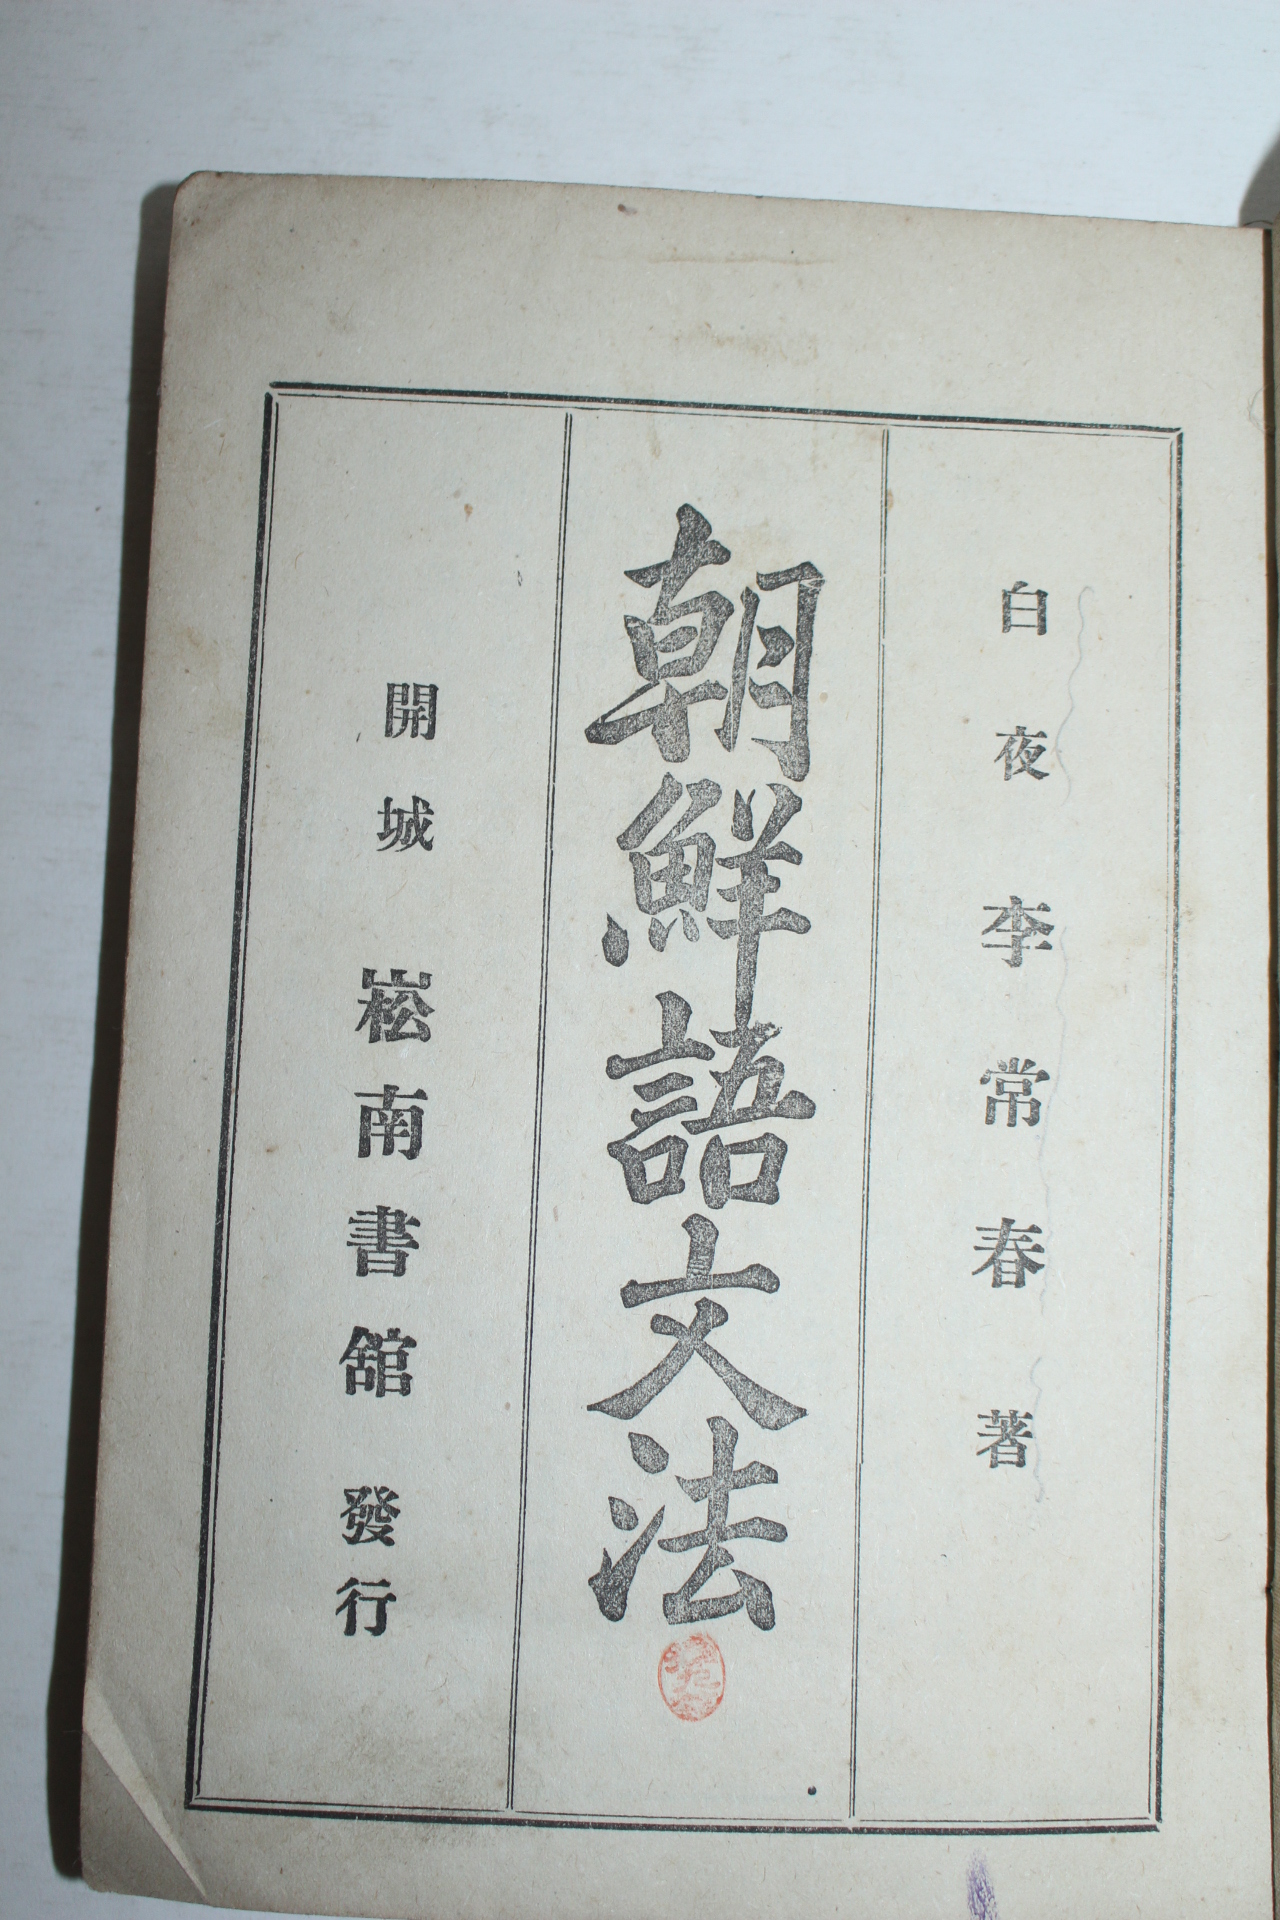 1925년 백야 이상춘(李常春) 조선어문법(朝鮮語文法)